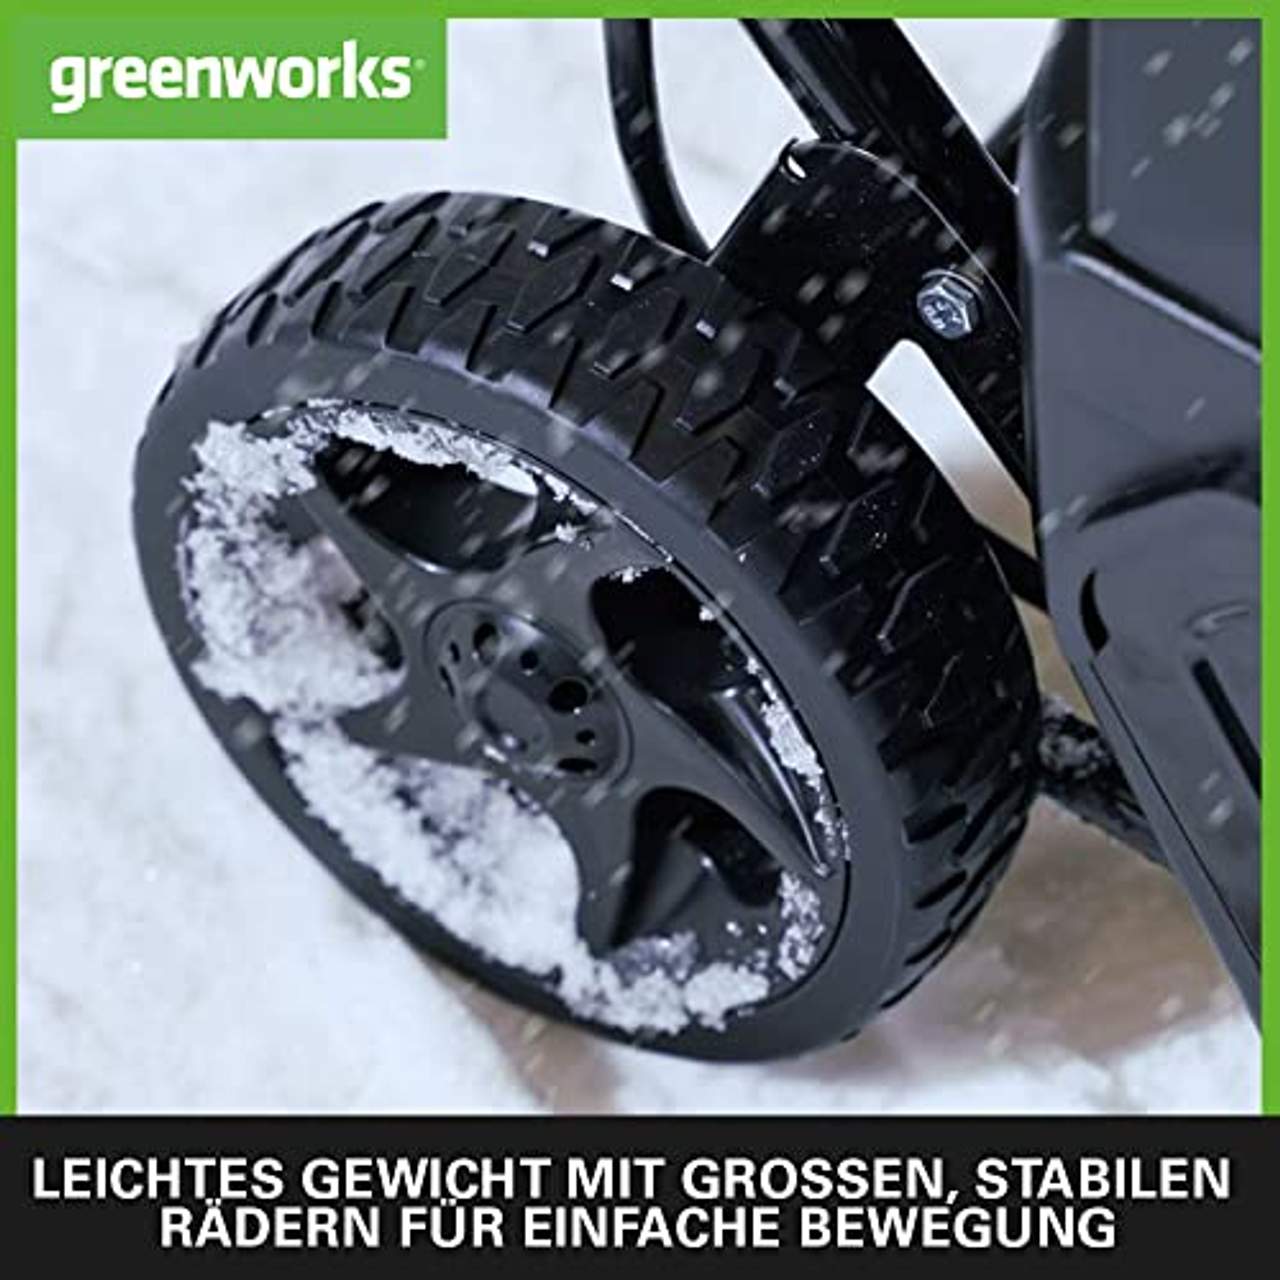 Greenworks 40V Akku-Schneefräse